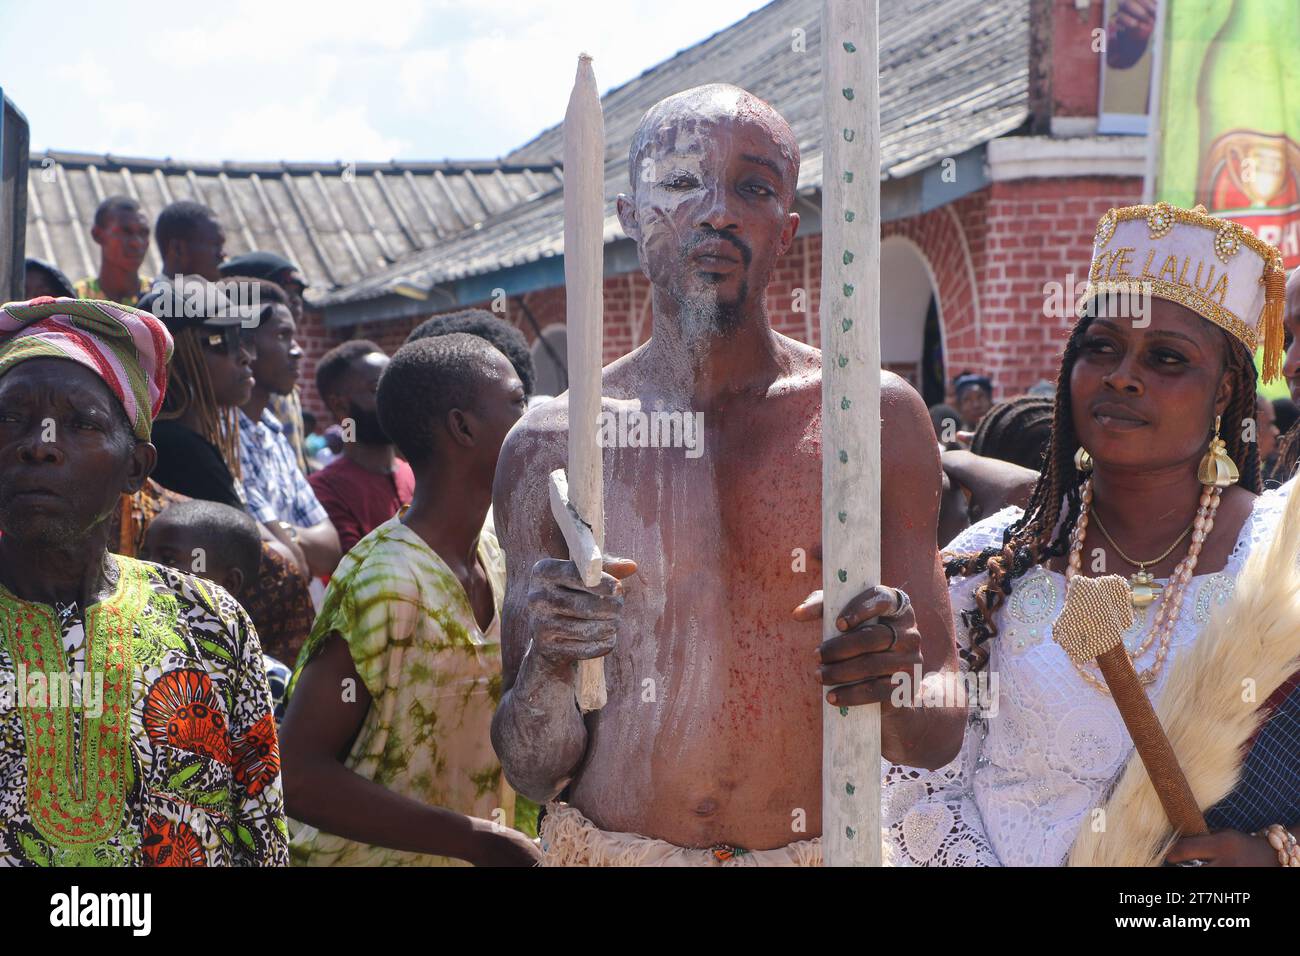 Die Besucher kommen zusammen, um das Olojo Festival in Ile-Ife im Bundesstaat Osun zu beobachten. Das Olojo-Festival ist eine Feier von Ogun, dem Gott von Eisen, und erinnert an den Abstieg von Oduduwa zur Ile-Ife, die Feier des ersten Sonnenaufgangs, des ersten Nachmittags und der ersten Nacht der Schöpfung. Das Olojo-Festival ist eines der ältesten in Afrika, das im ganzen Yoruba-Land gefeiert wird. Es feiert den Beginn des ersten Tages der Existenz auf der Erde, wo der Monarch die heilige Krone trägt, die größere Bedeutung bei der Olojo-Feier in Nigeria hat. Stockfoto